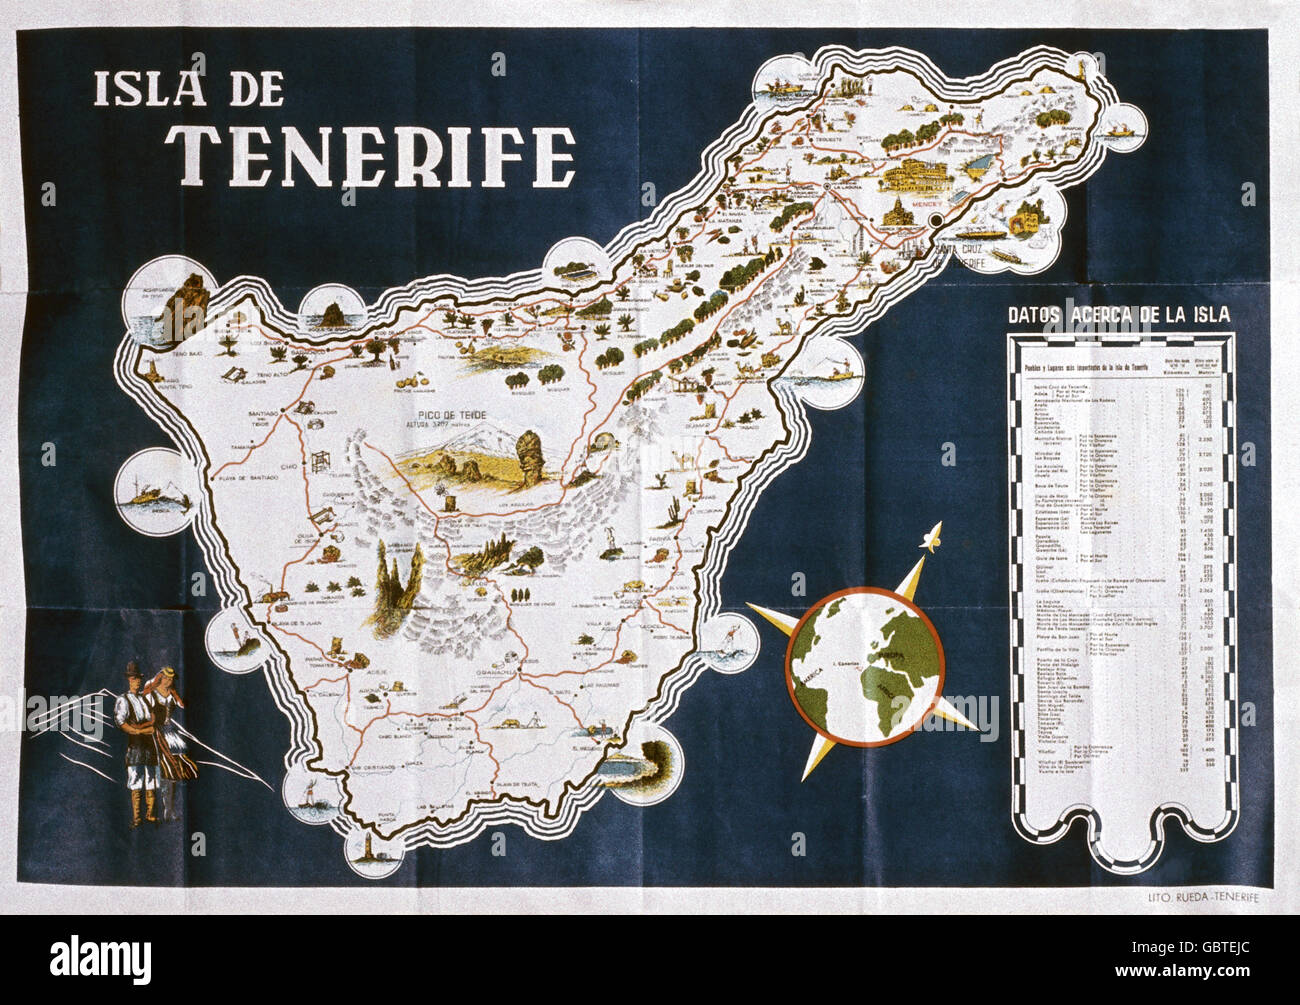 Geographie / Reisen, Spanien, Kanarische Inseln, Teneriffa, topografische Karte, 1958, Zusatzrechte-Clearences-not available Stockfoto